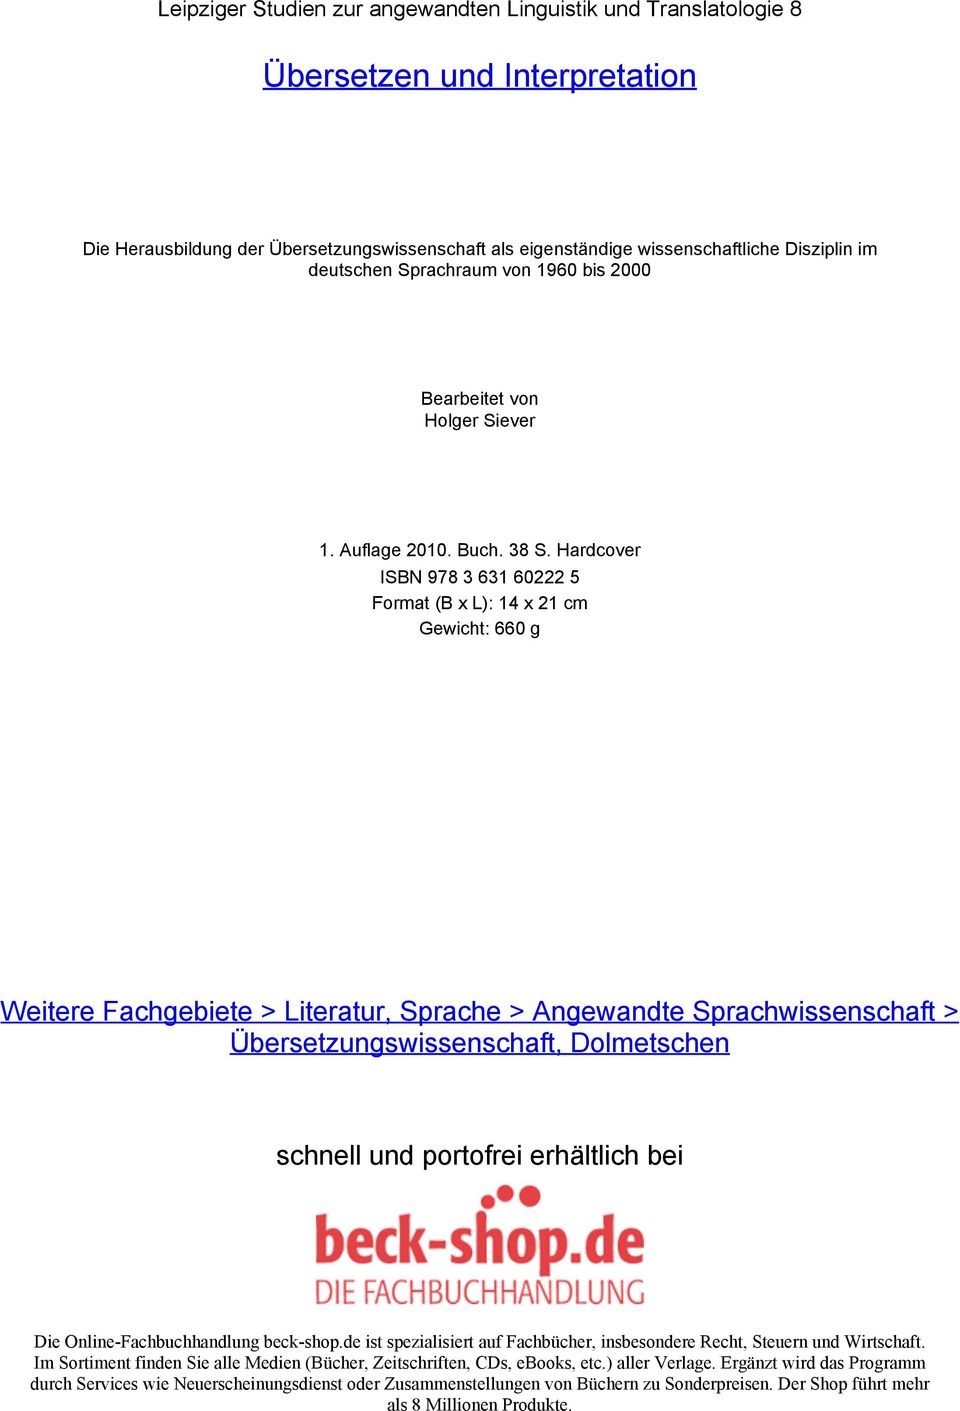 Hardcover ISBN 978 3 631 60222 5 Format (B x L): 14 x 21 cm Gewicht: 660 g Weitere Fachgebiete > Literatur, Sprache > Angewandte Sprachwissenschaft > Übersetzungswissenschaft, Dolmetschen schnell und